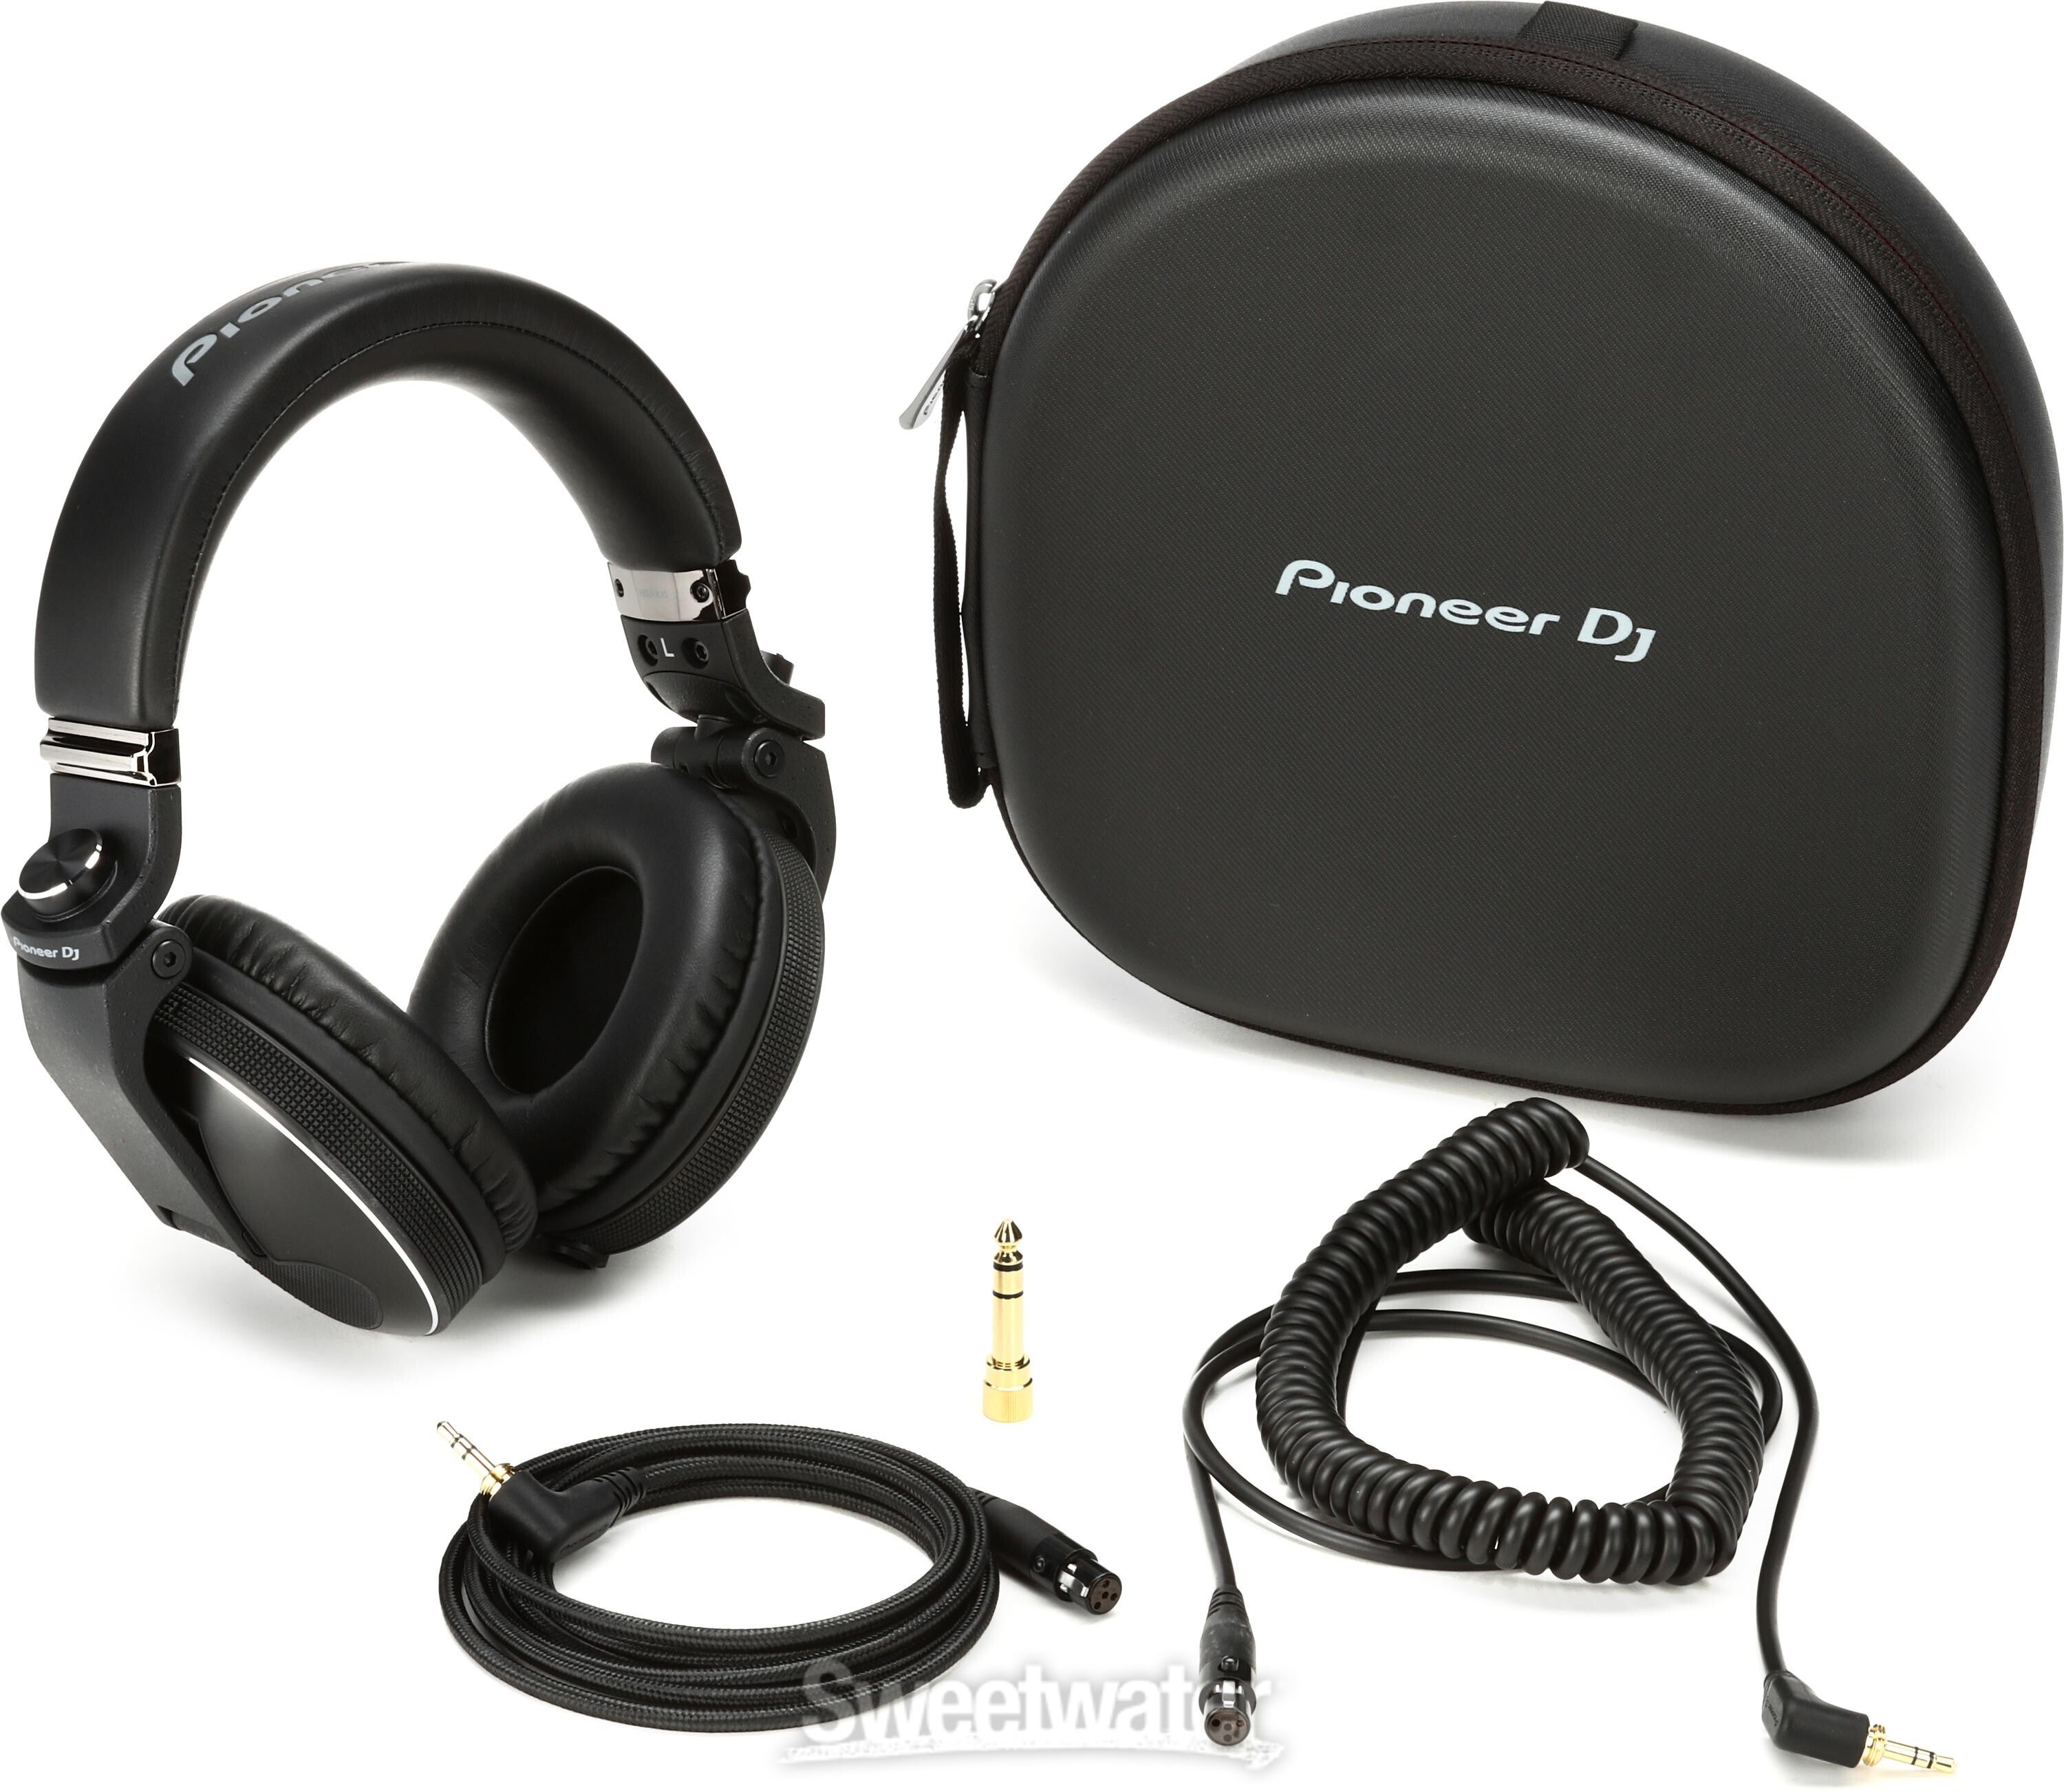 Pioneer DJ HDJ-X10 Professional DJ Headphones - Black | Sweetwater